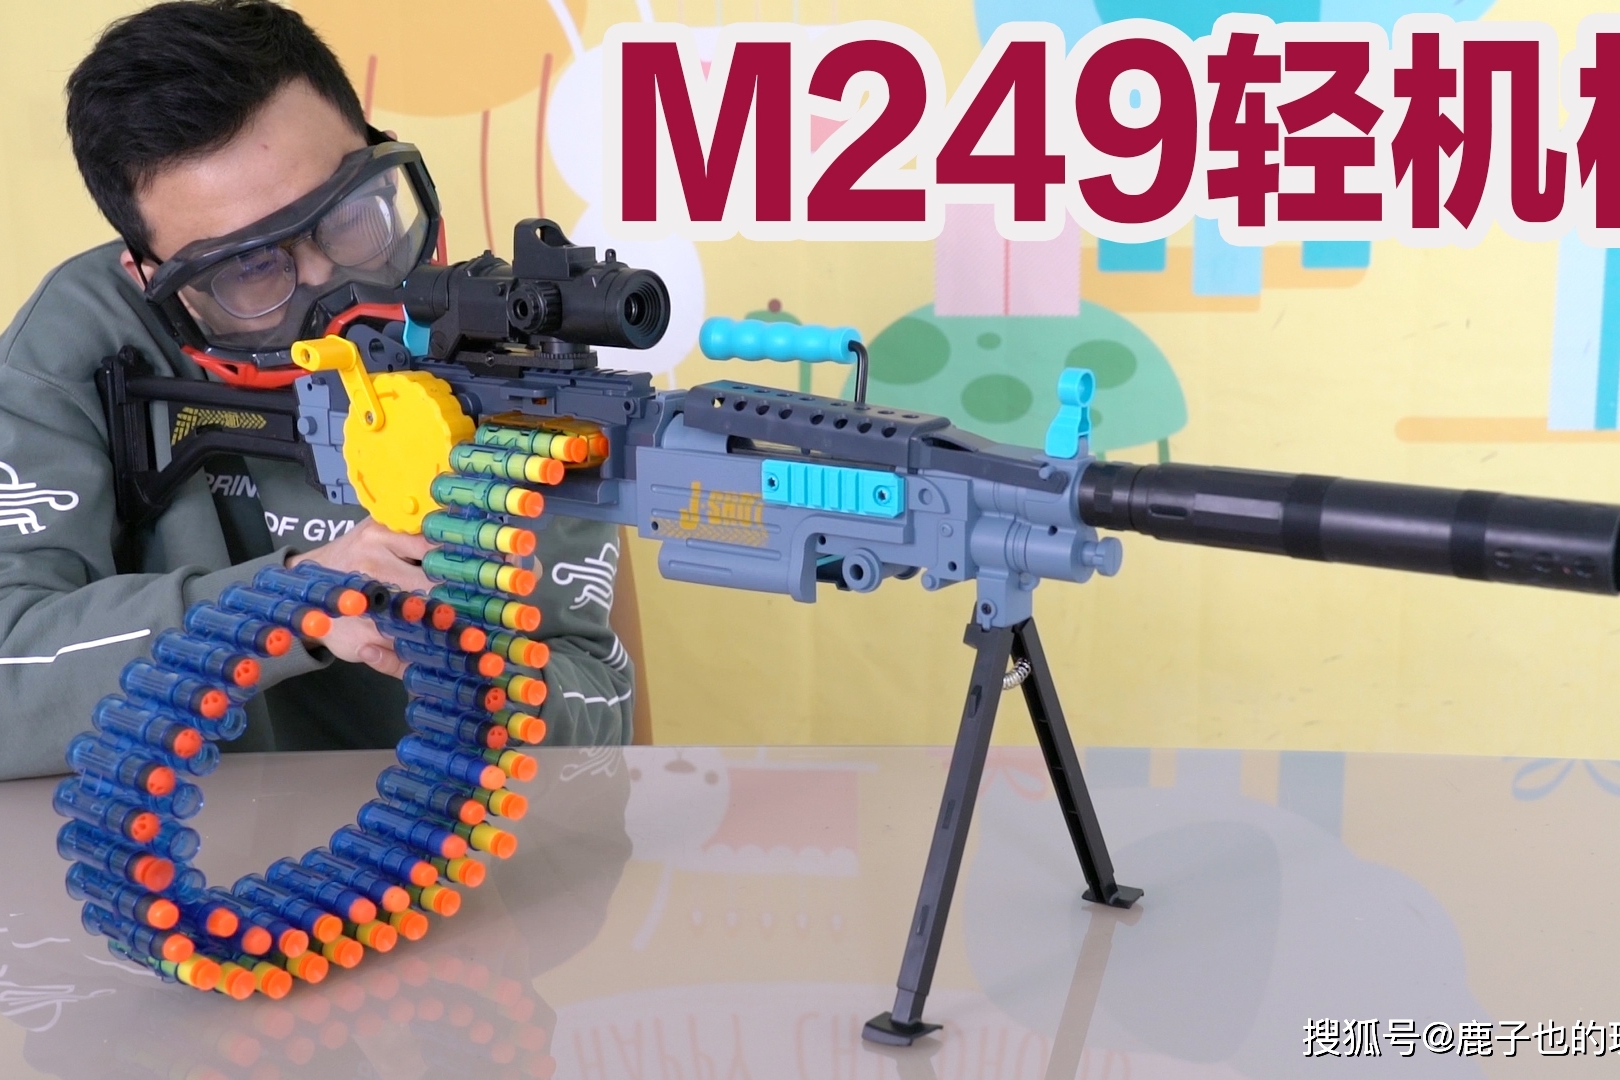 试玩m249轻机枪大菠萝,只有弹夹够多,火力才有保证